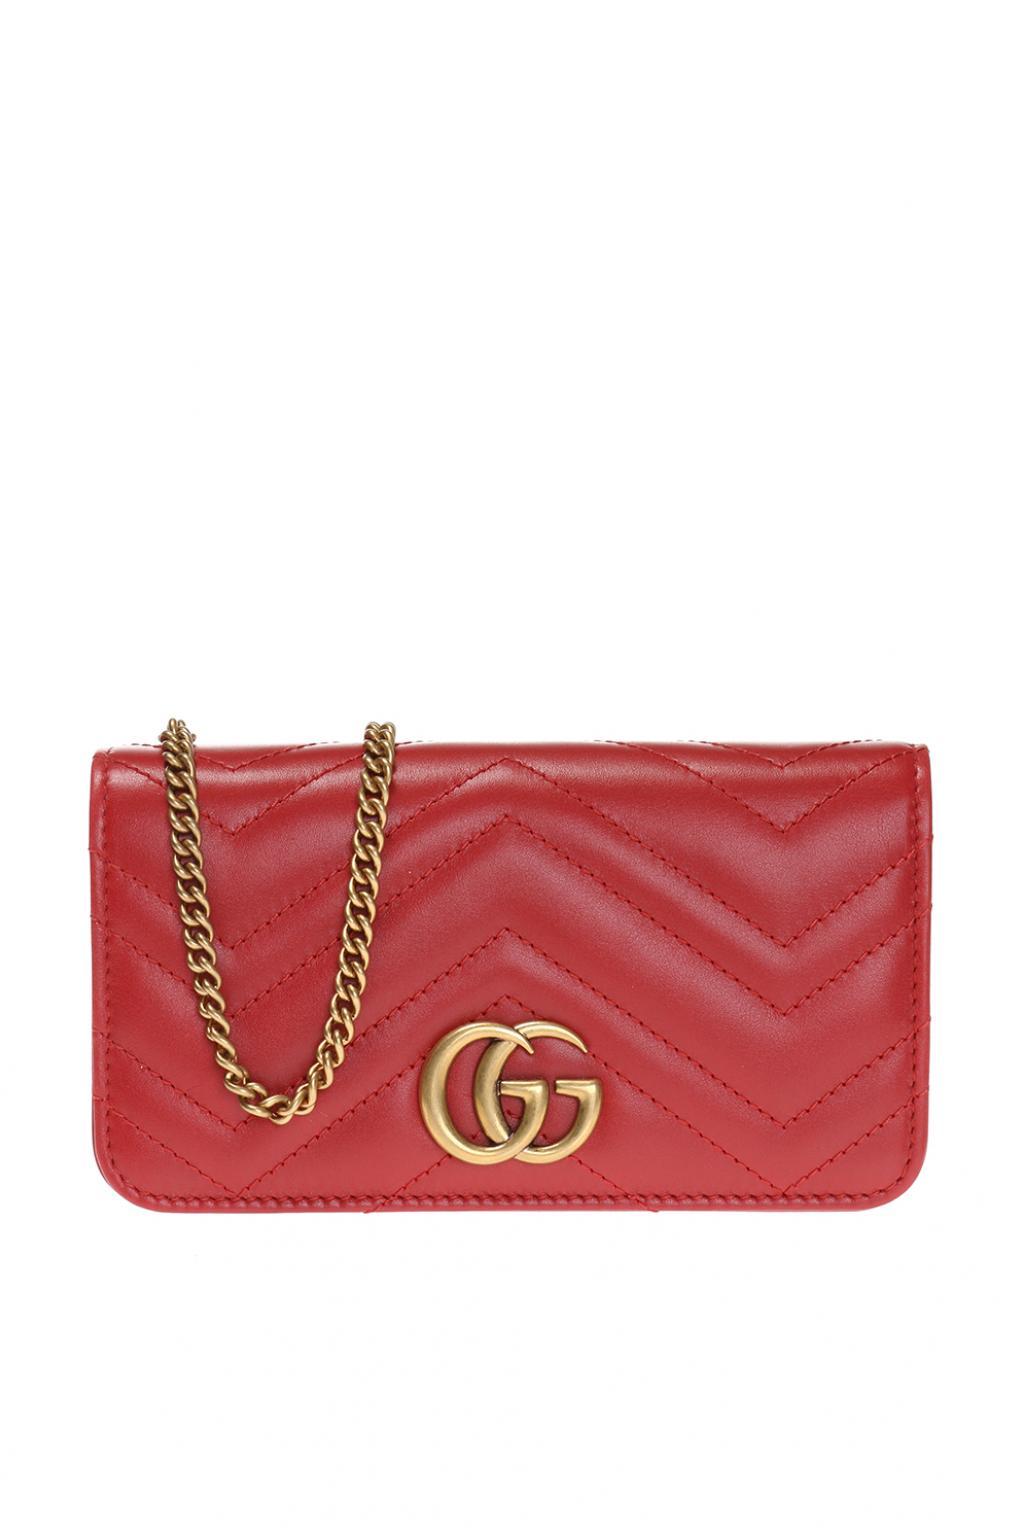 Gucci Marmont Shoulder Bag Red | semashow.com